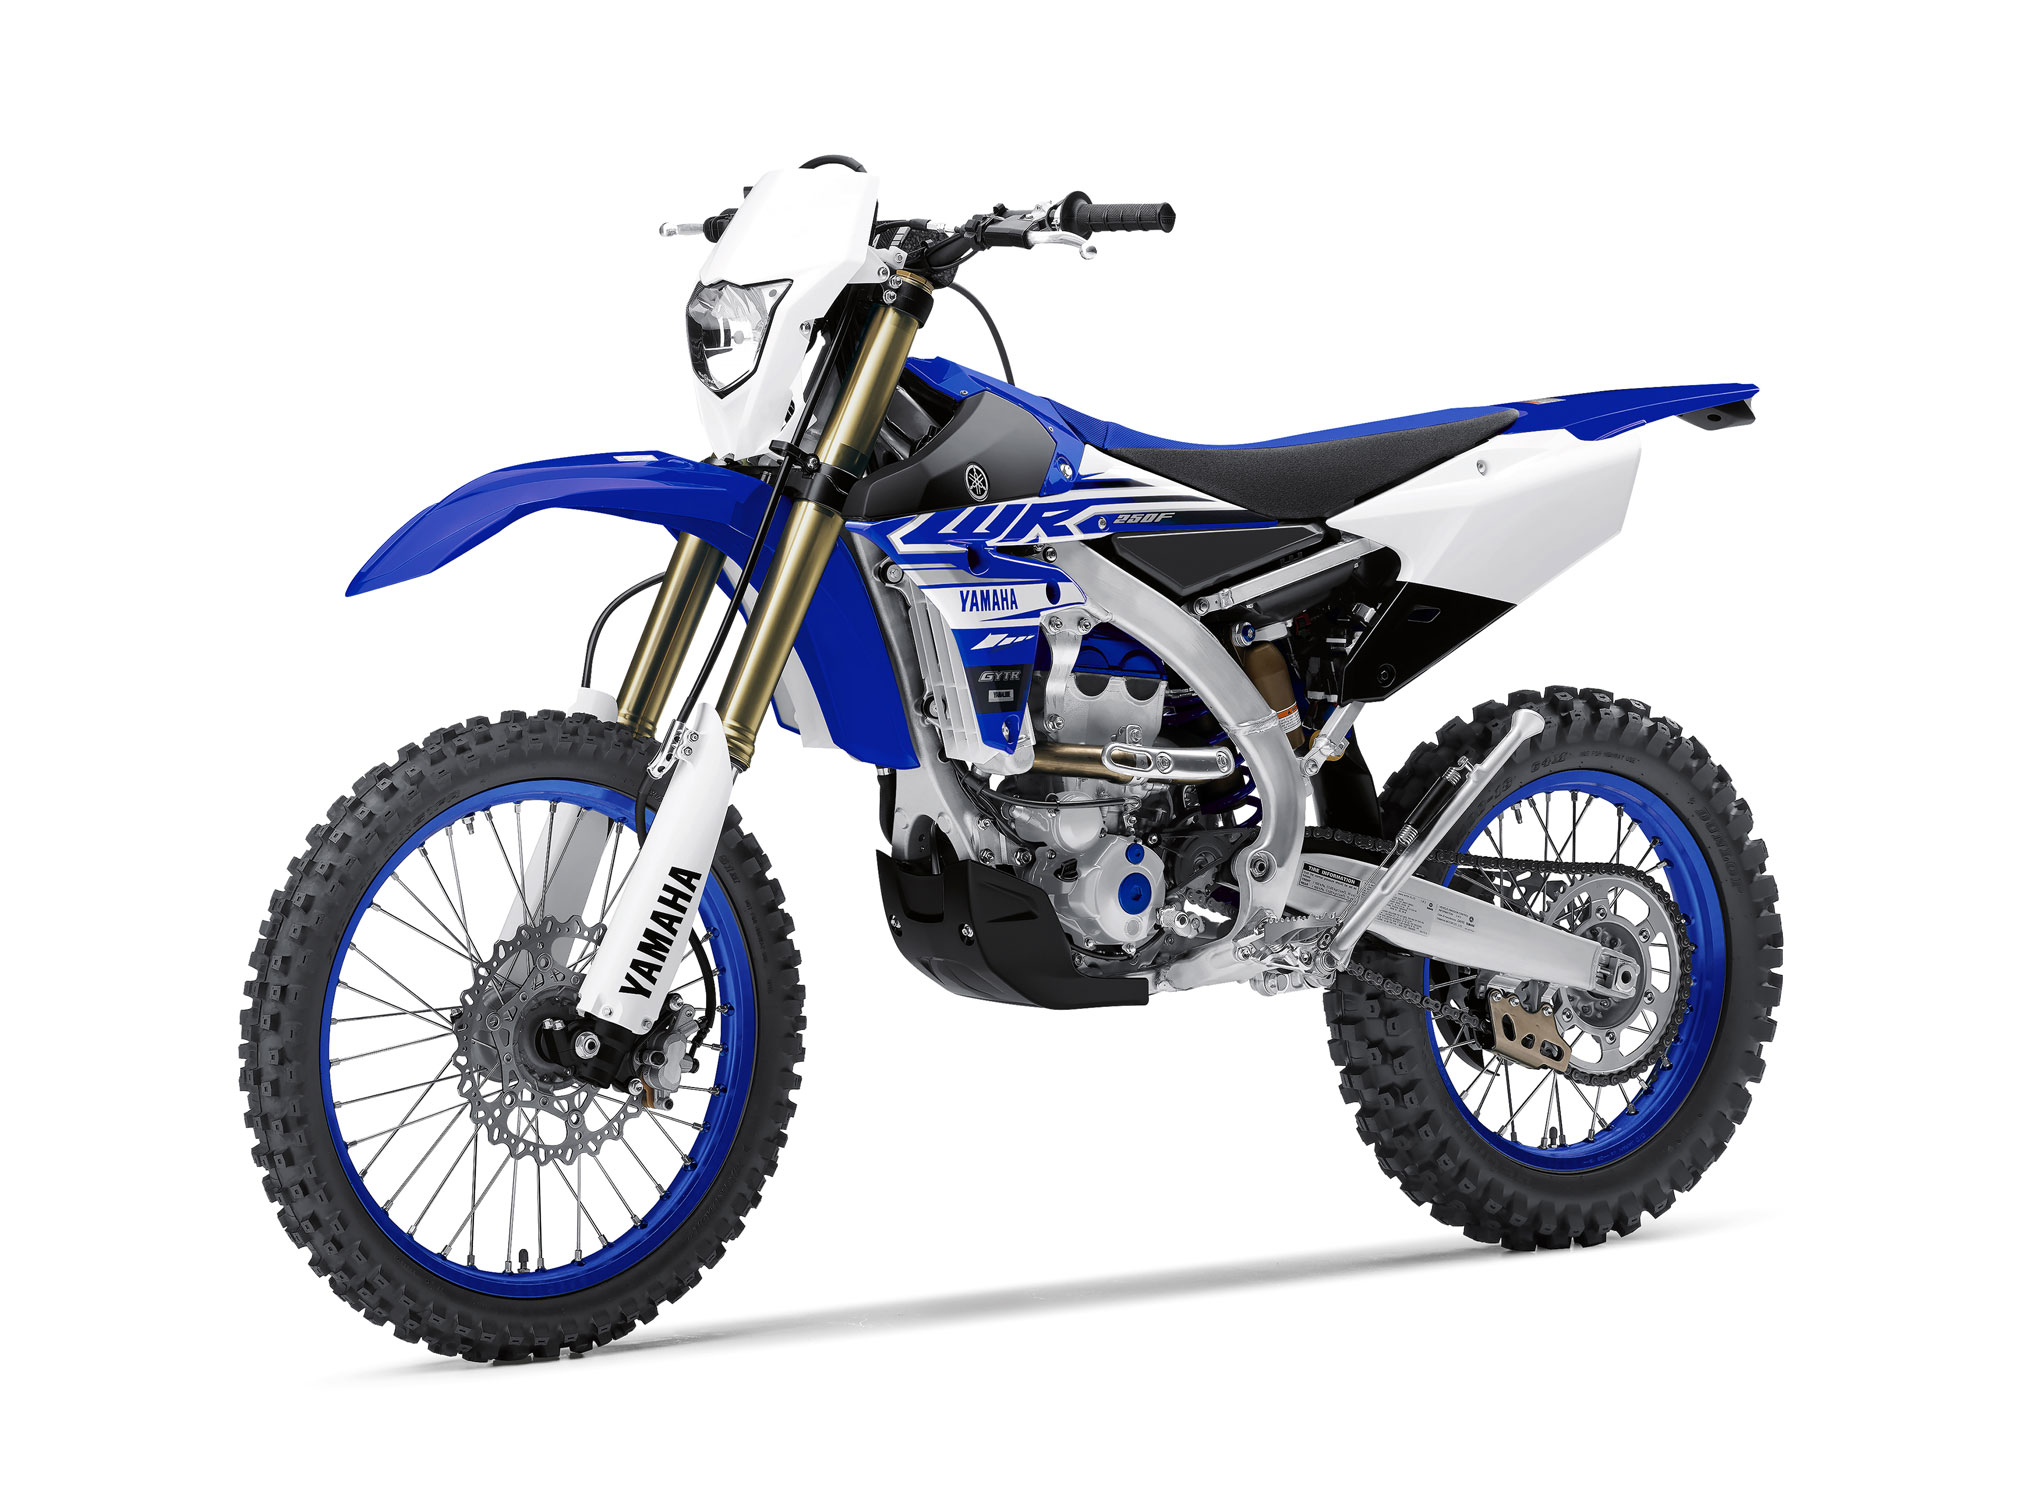 ganso Retirarse animal 2019 Yamaha WR250F Guide • Total Motorcycle